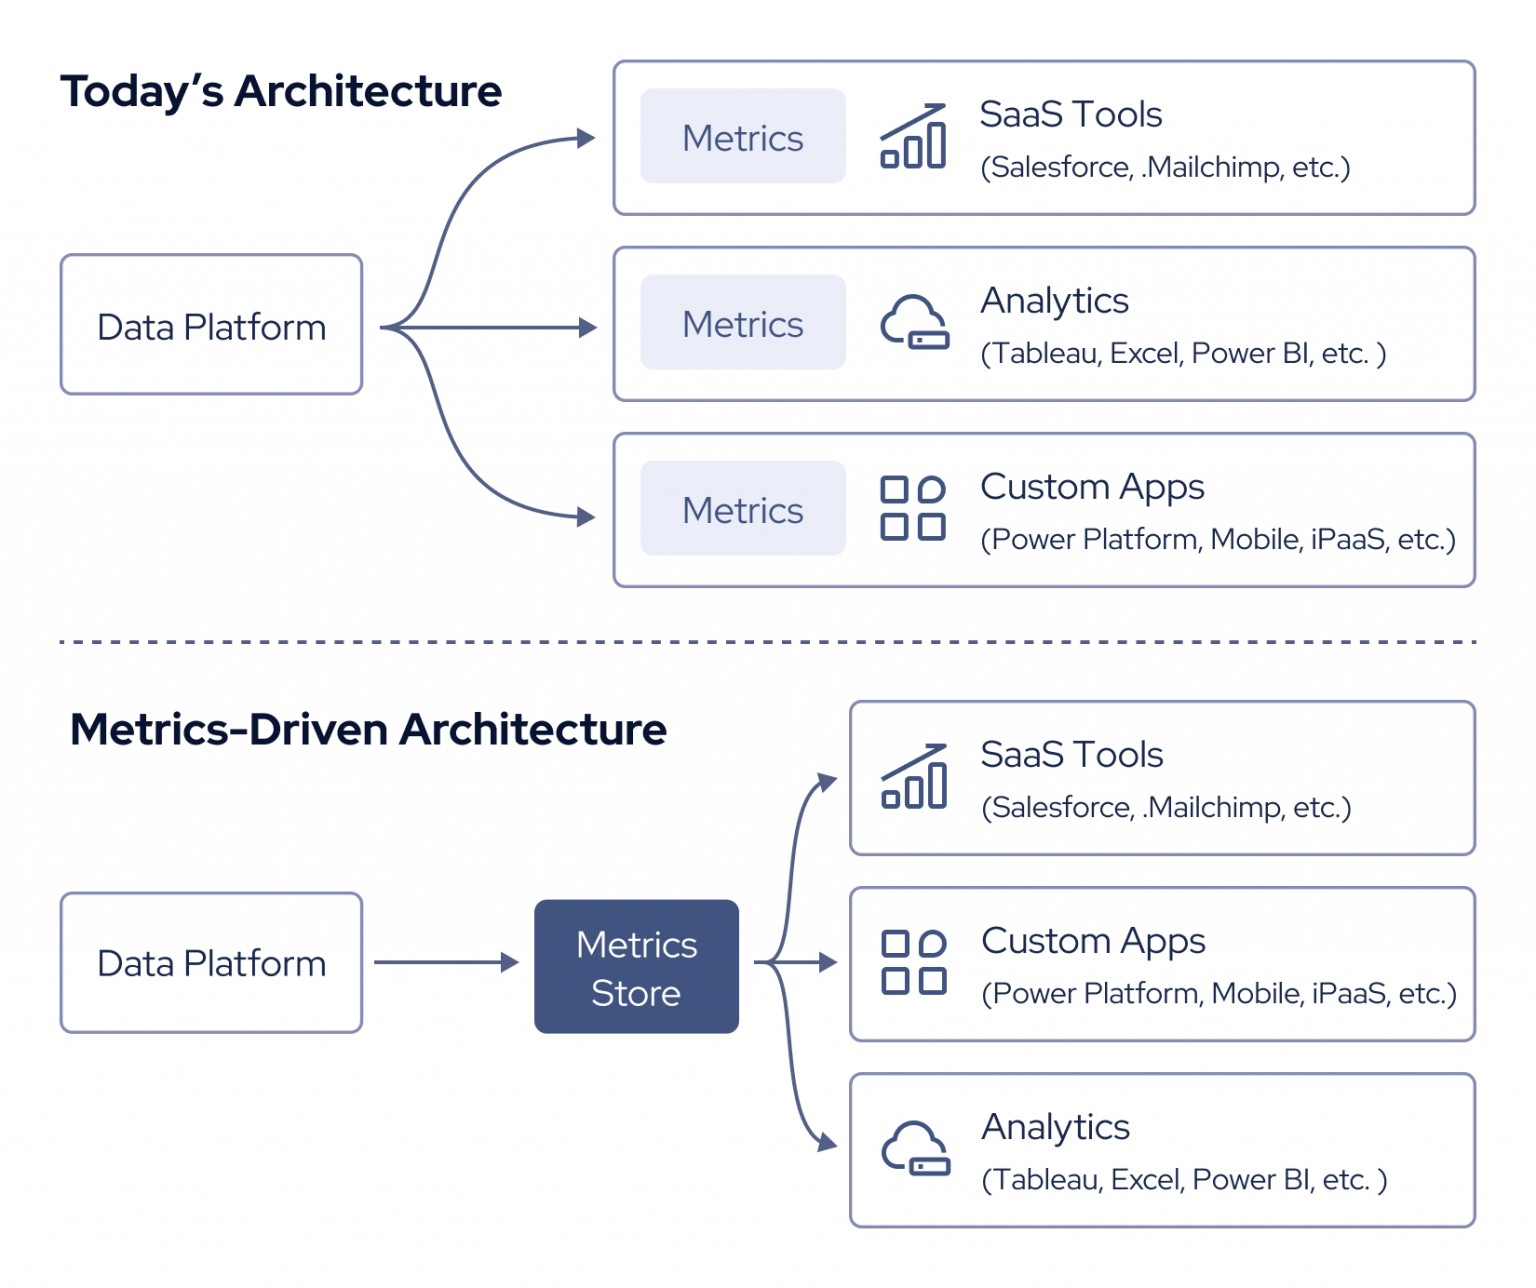 Chart comparing Today's Architecture vs. Metrics-Driven Architecture